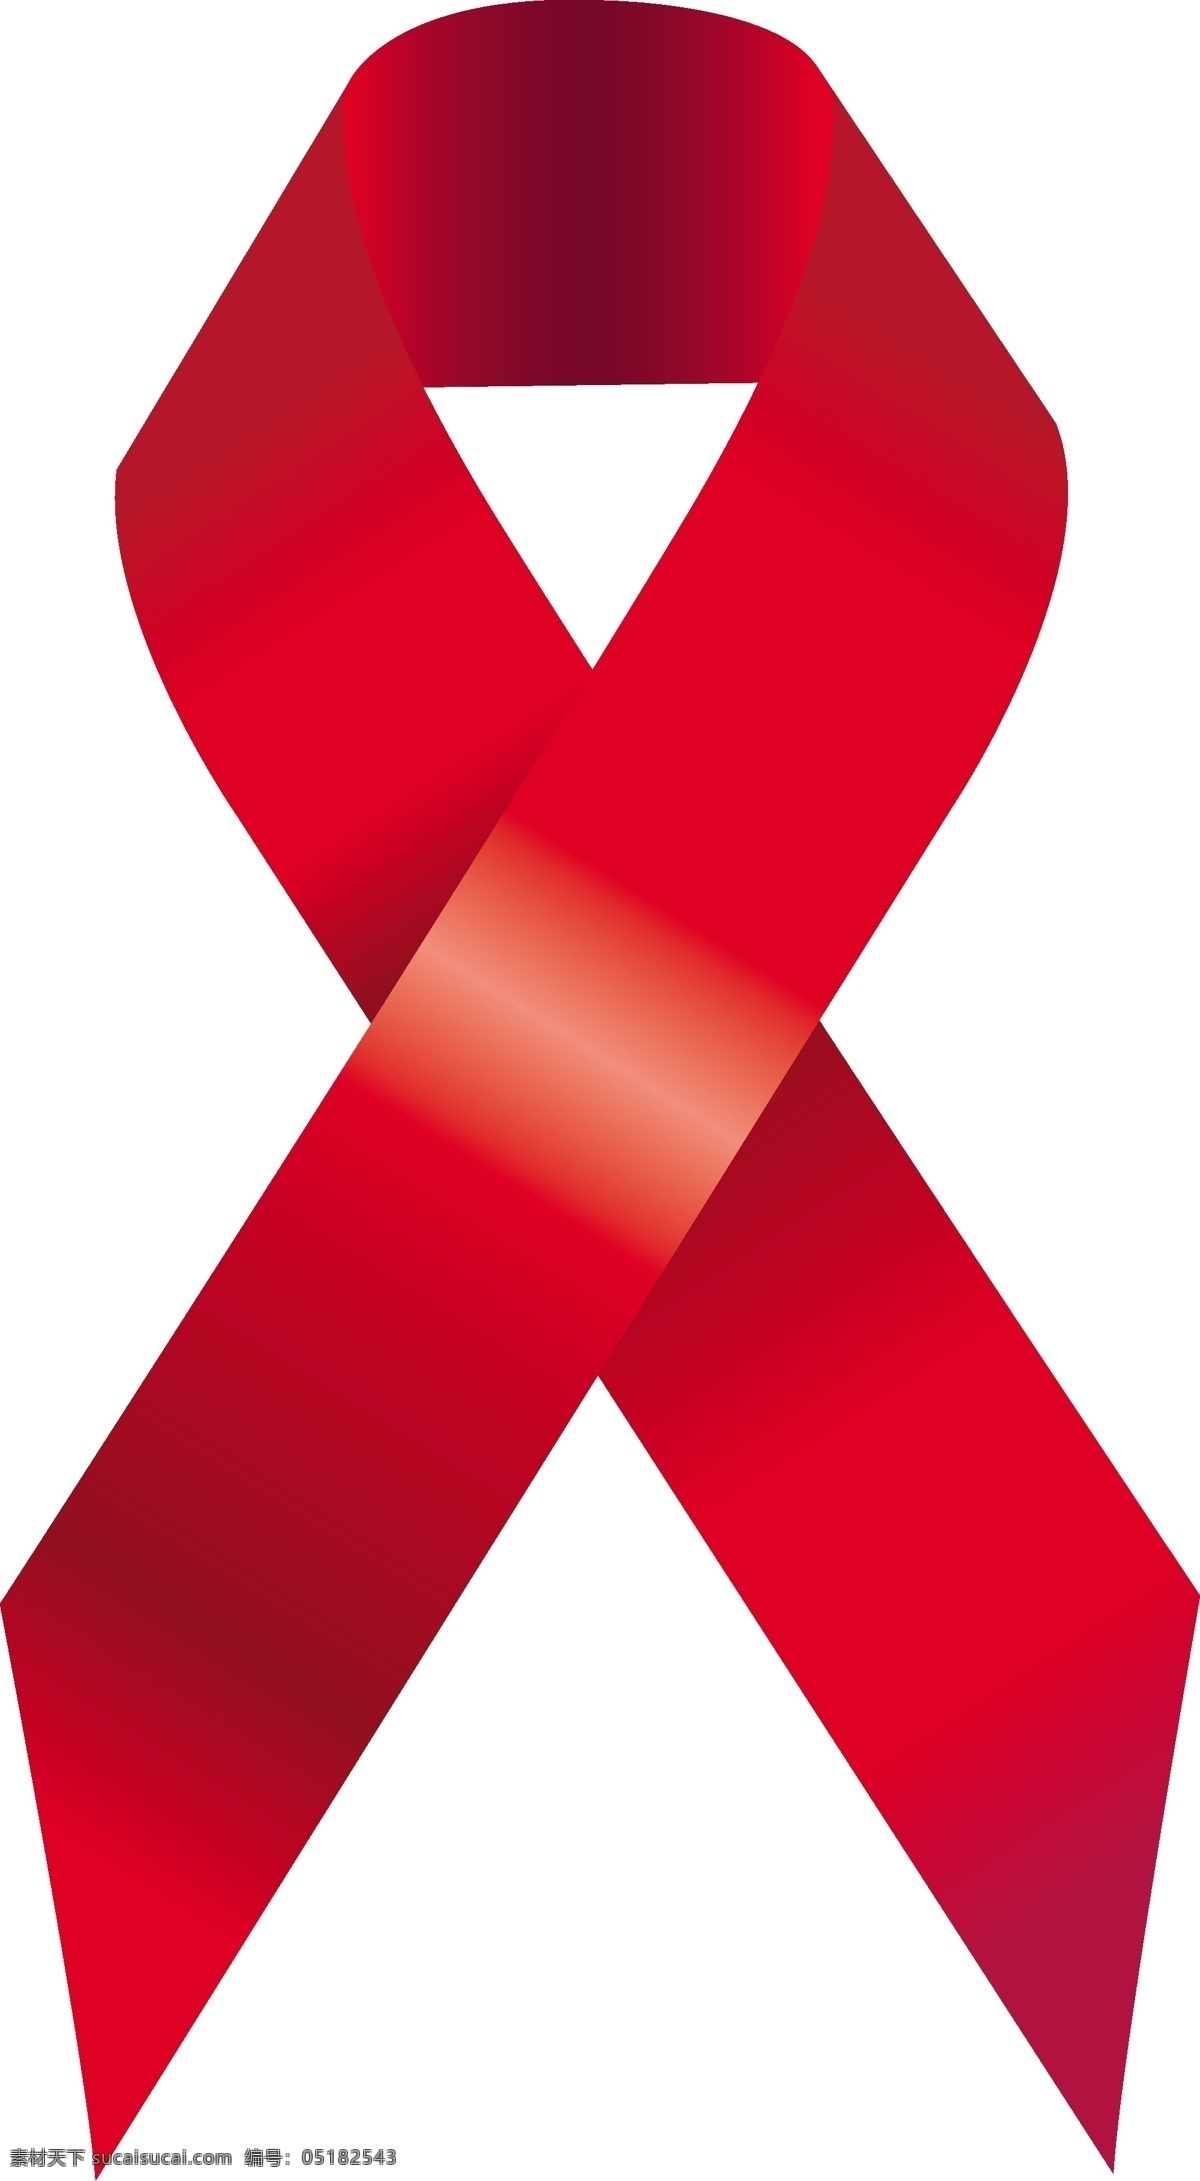 aids 艾滋病 标志 矢量 艾滋病标志 矢量素材 红丝带 标识标志图标 公共标识标志 矢量图库